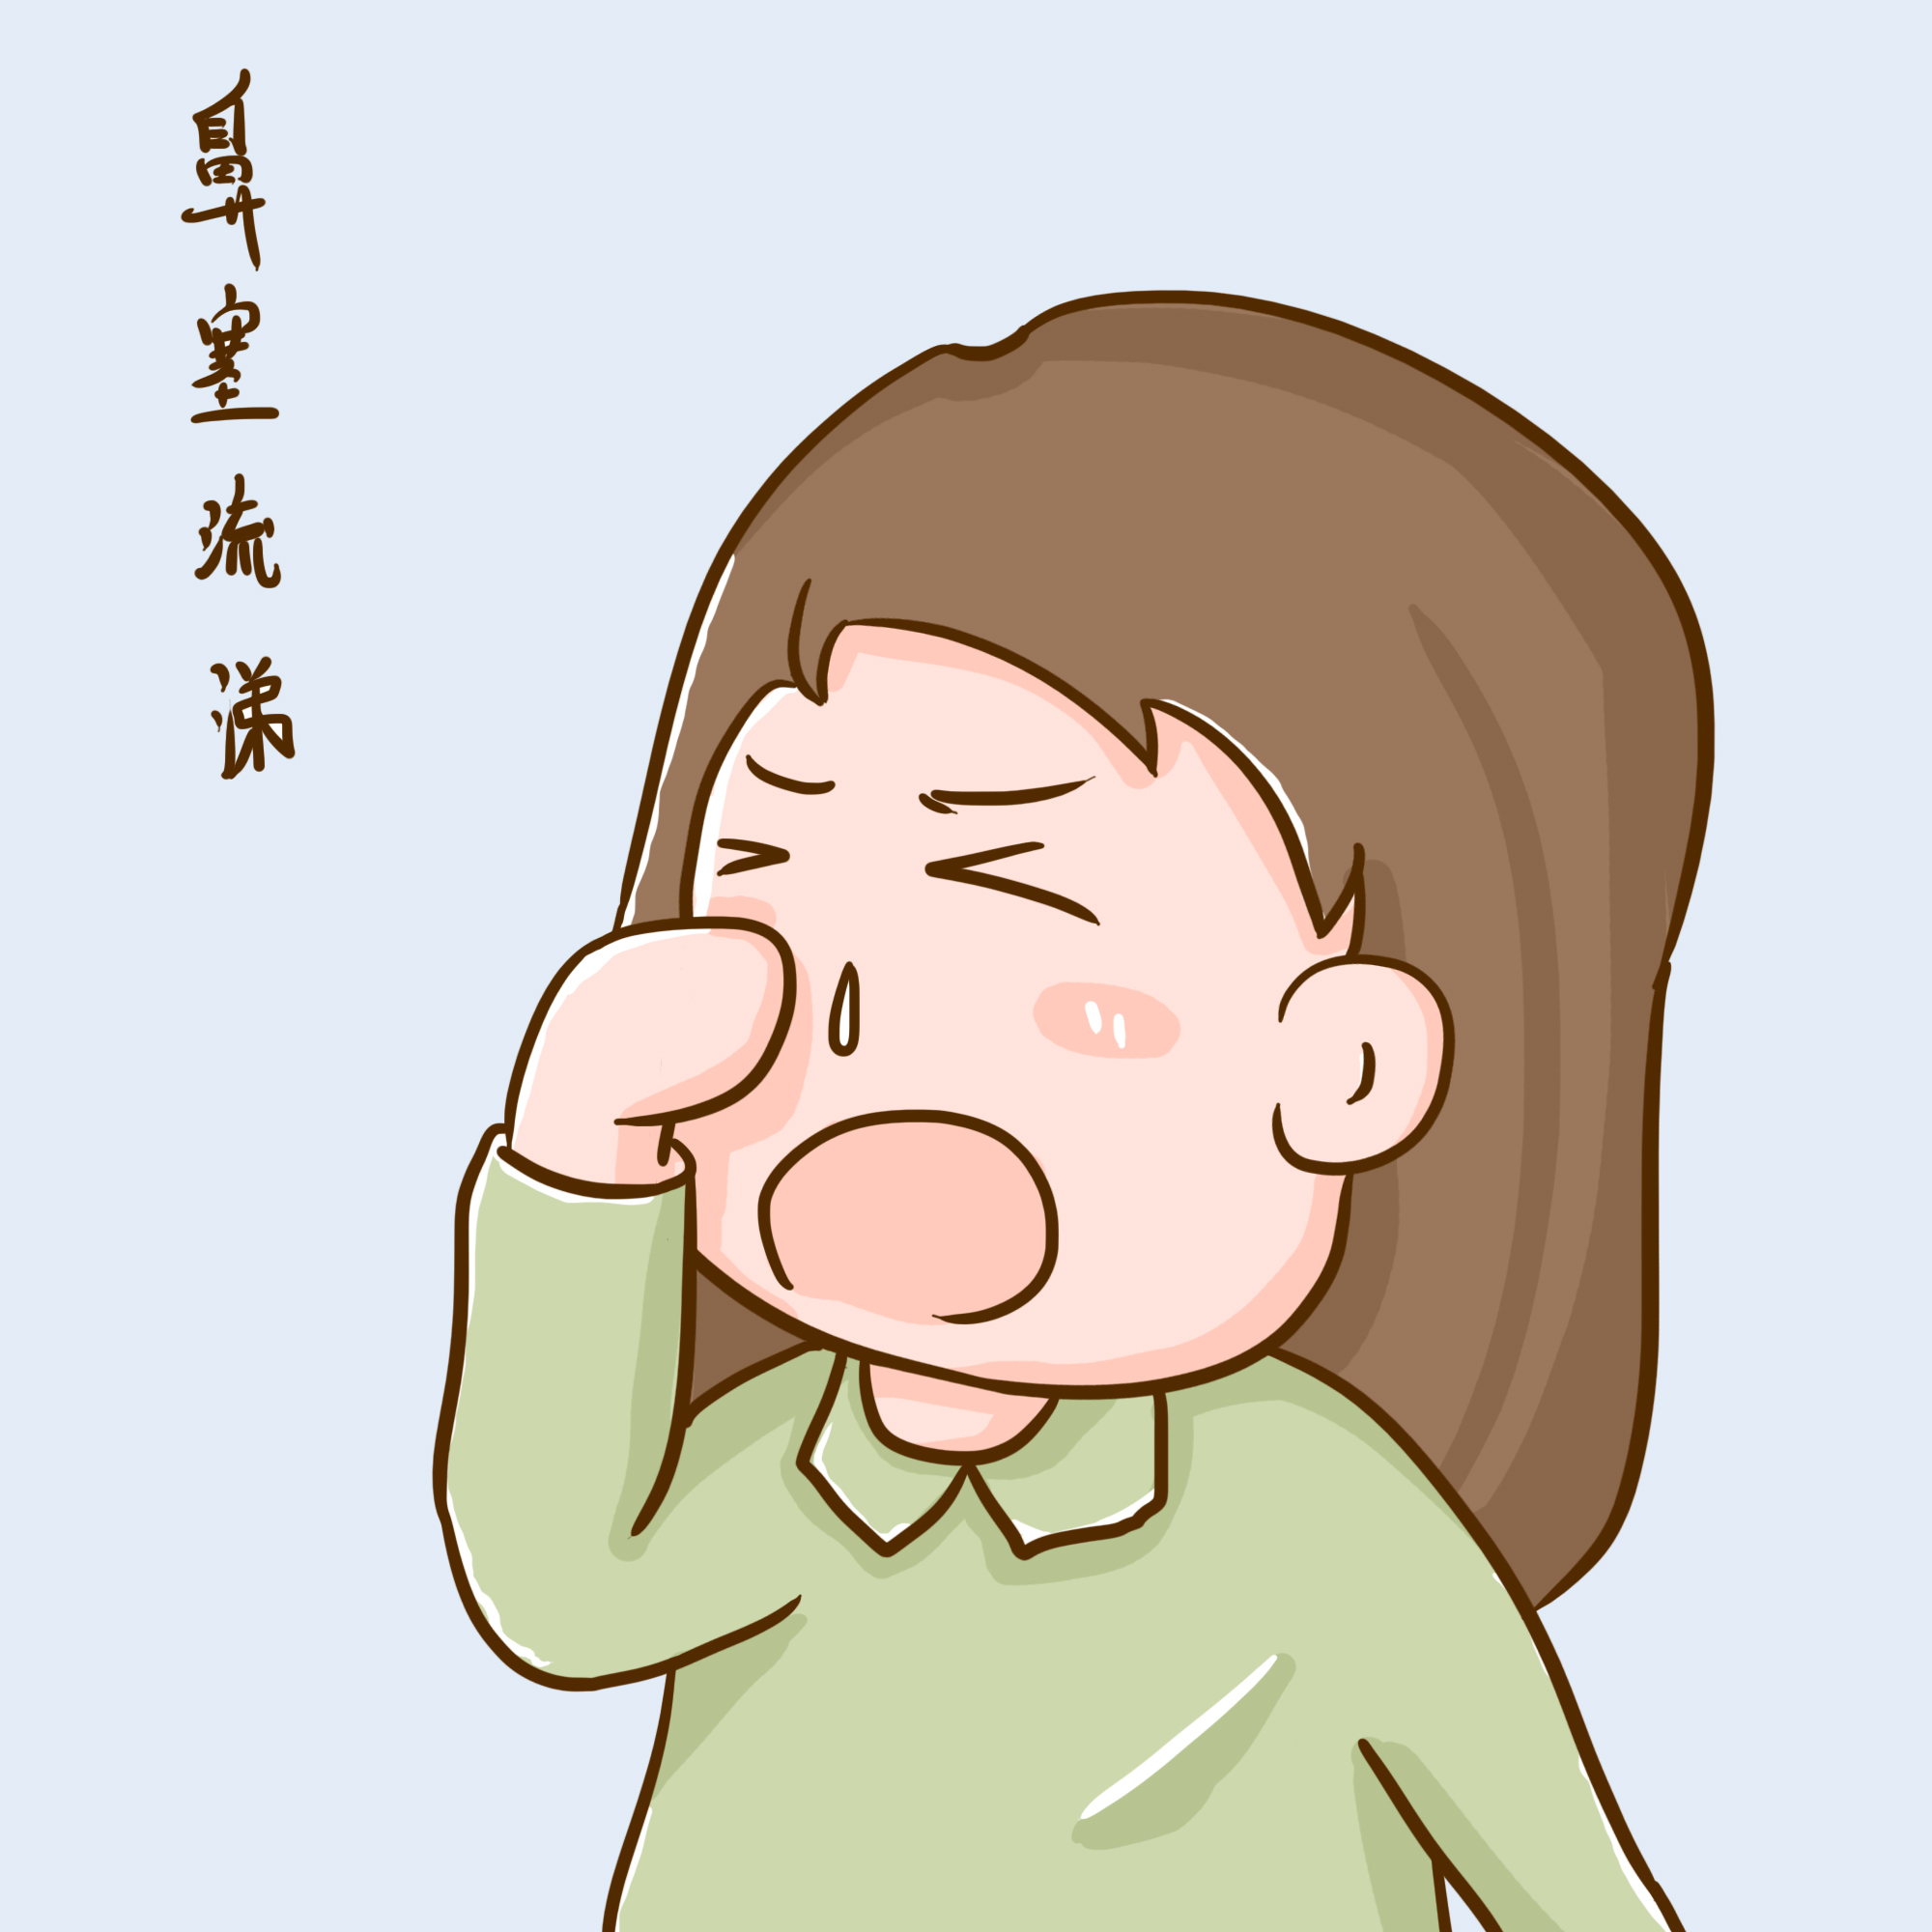 感冒头痛鼻塞身痛吃什么药？